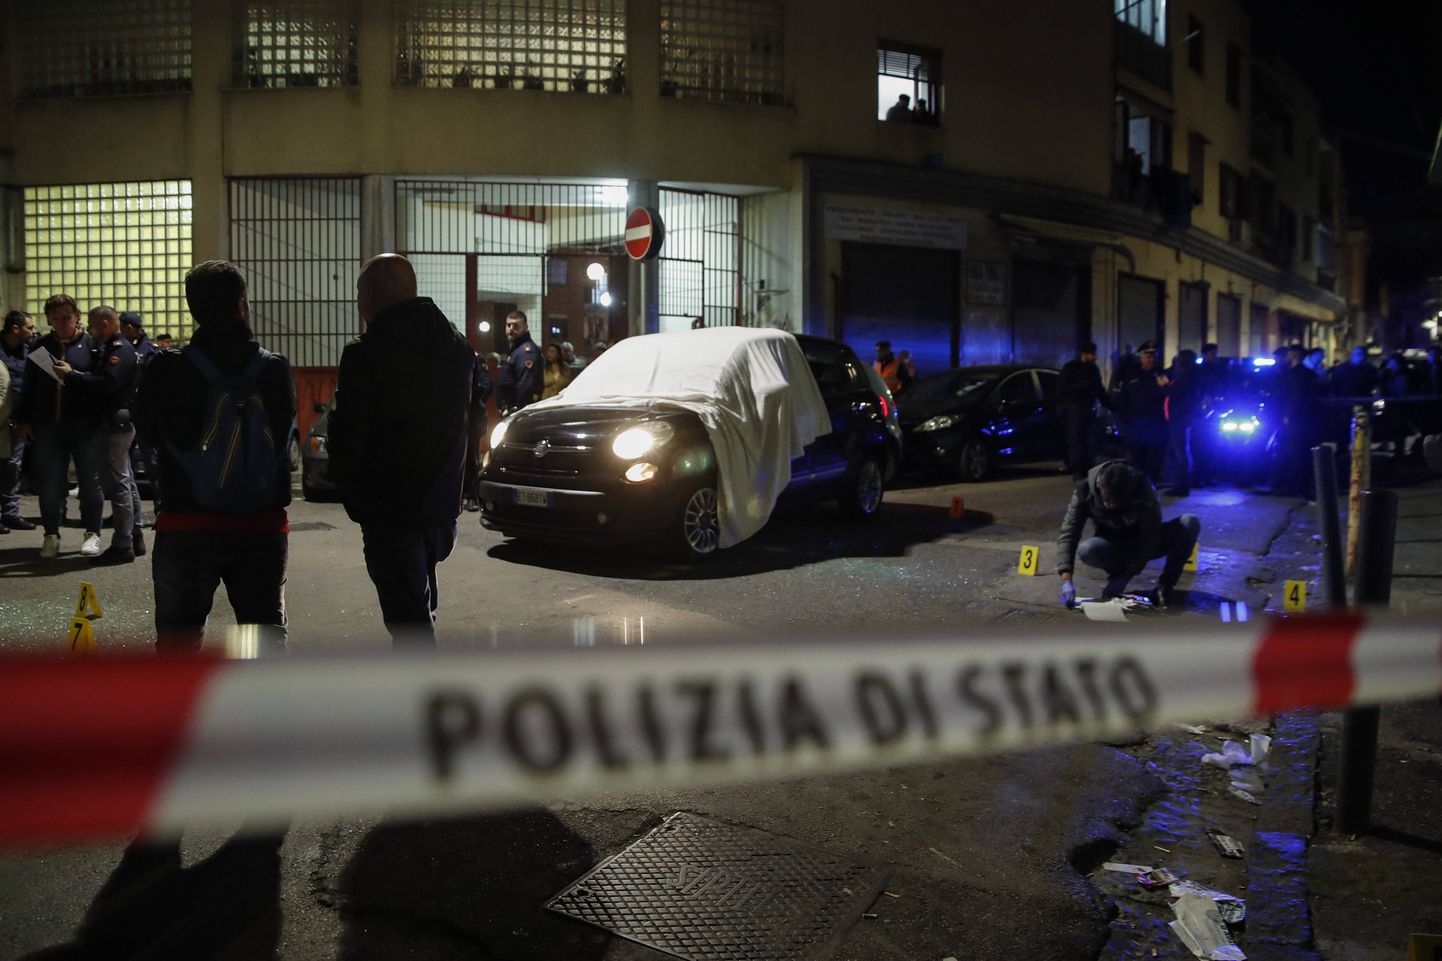 Politsei uurimas maffiarünnaku toimumispaika Napolis. Foto on illustratiivne.